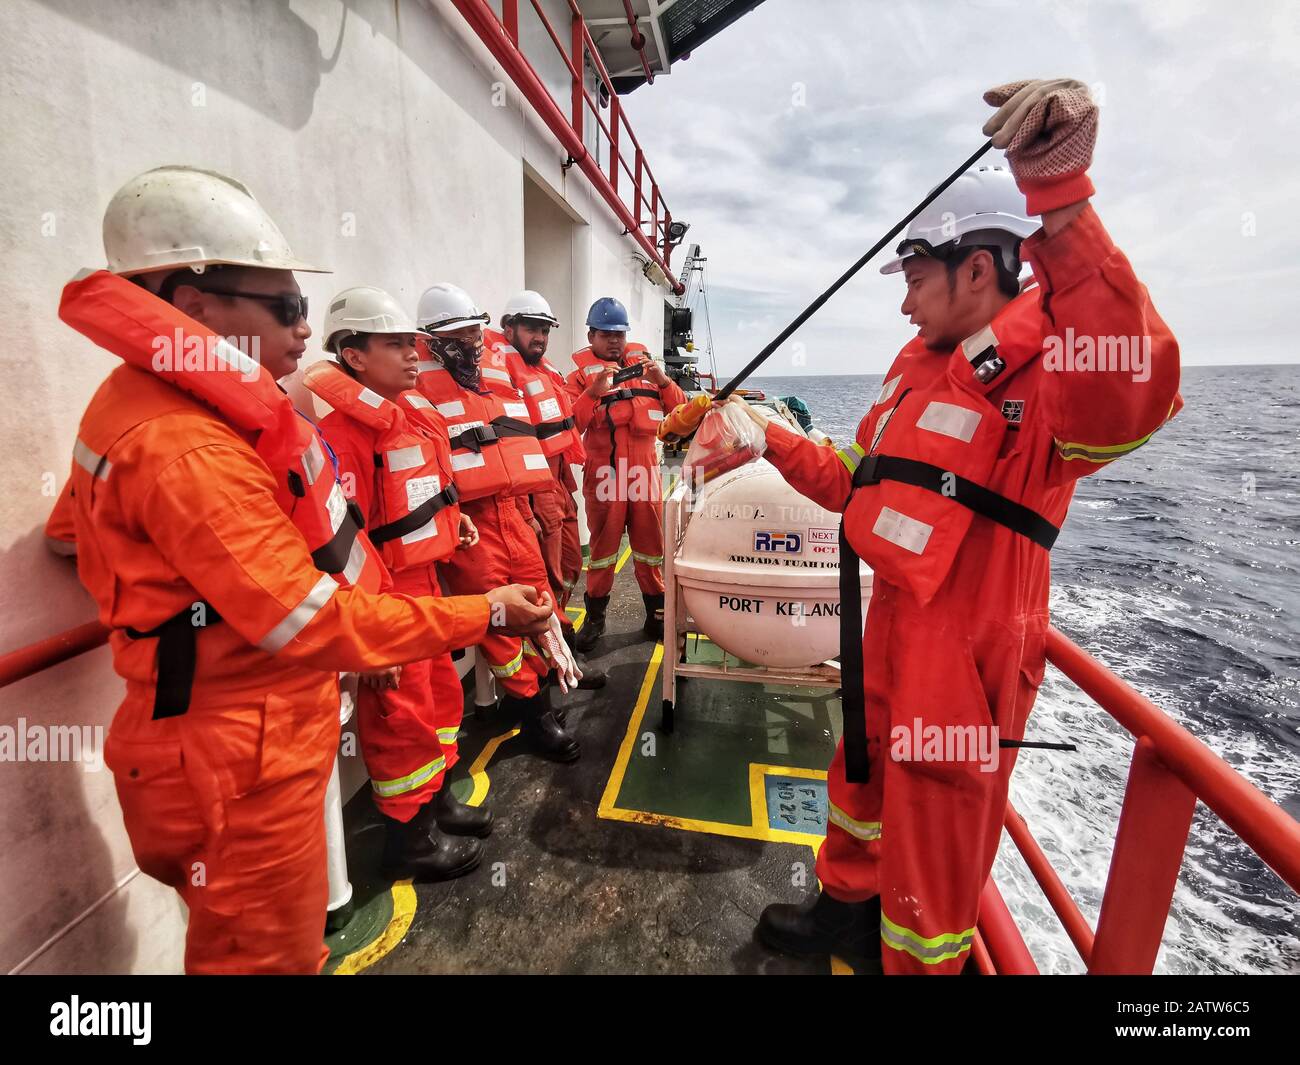 il chief officer sta eseguendo brevi briefing utilizzando le attrezzature di sicurezza e i materiali pirotecnici durante la perforazione di una nave abbandonata Foto Stock